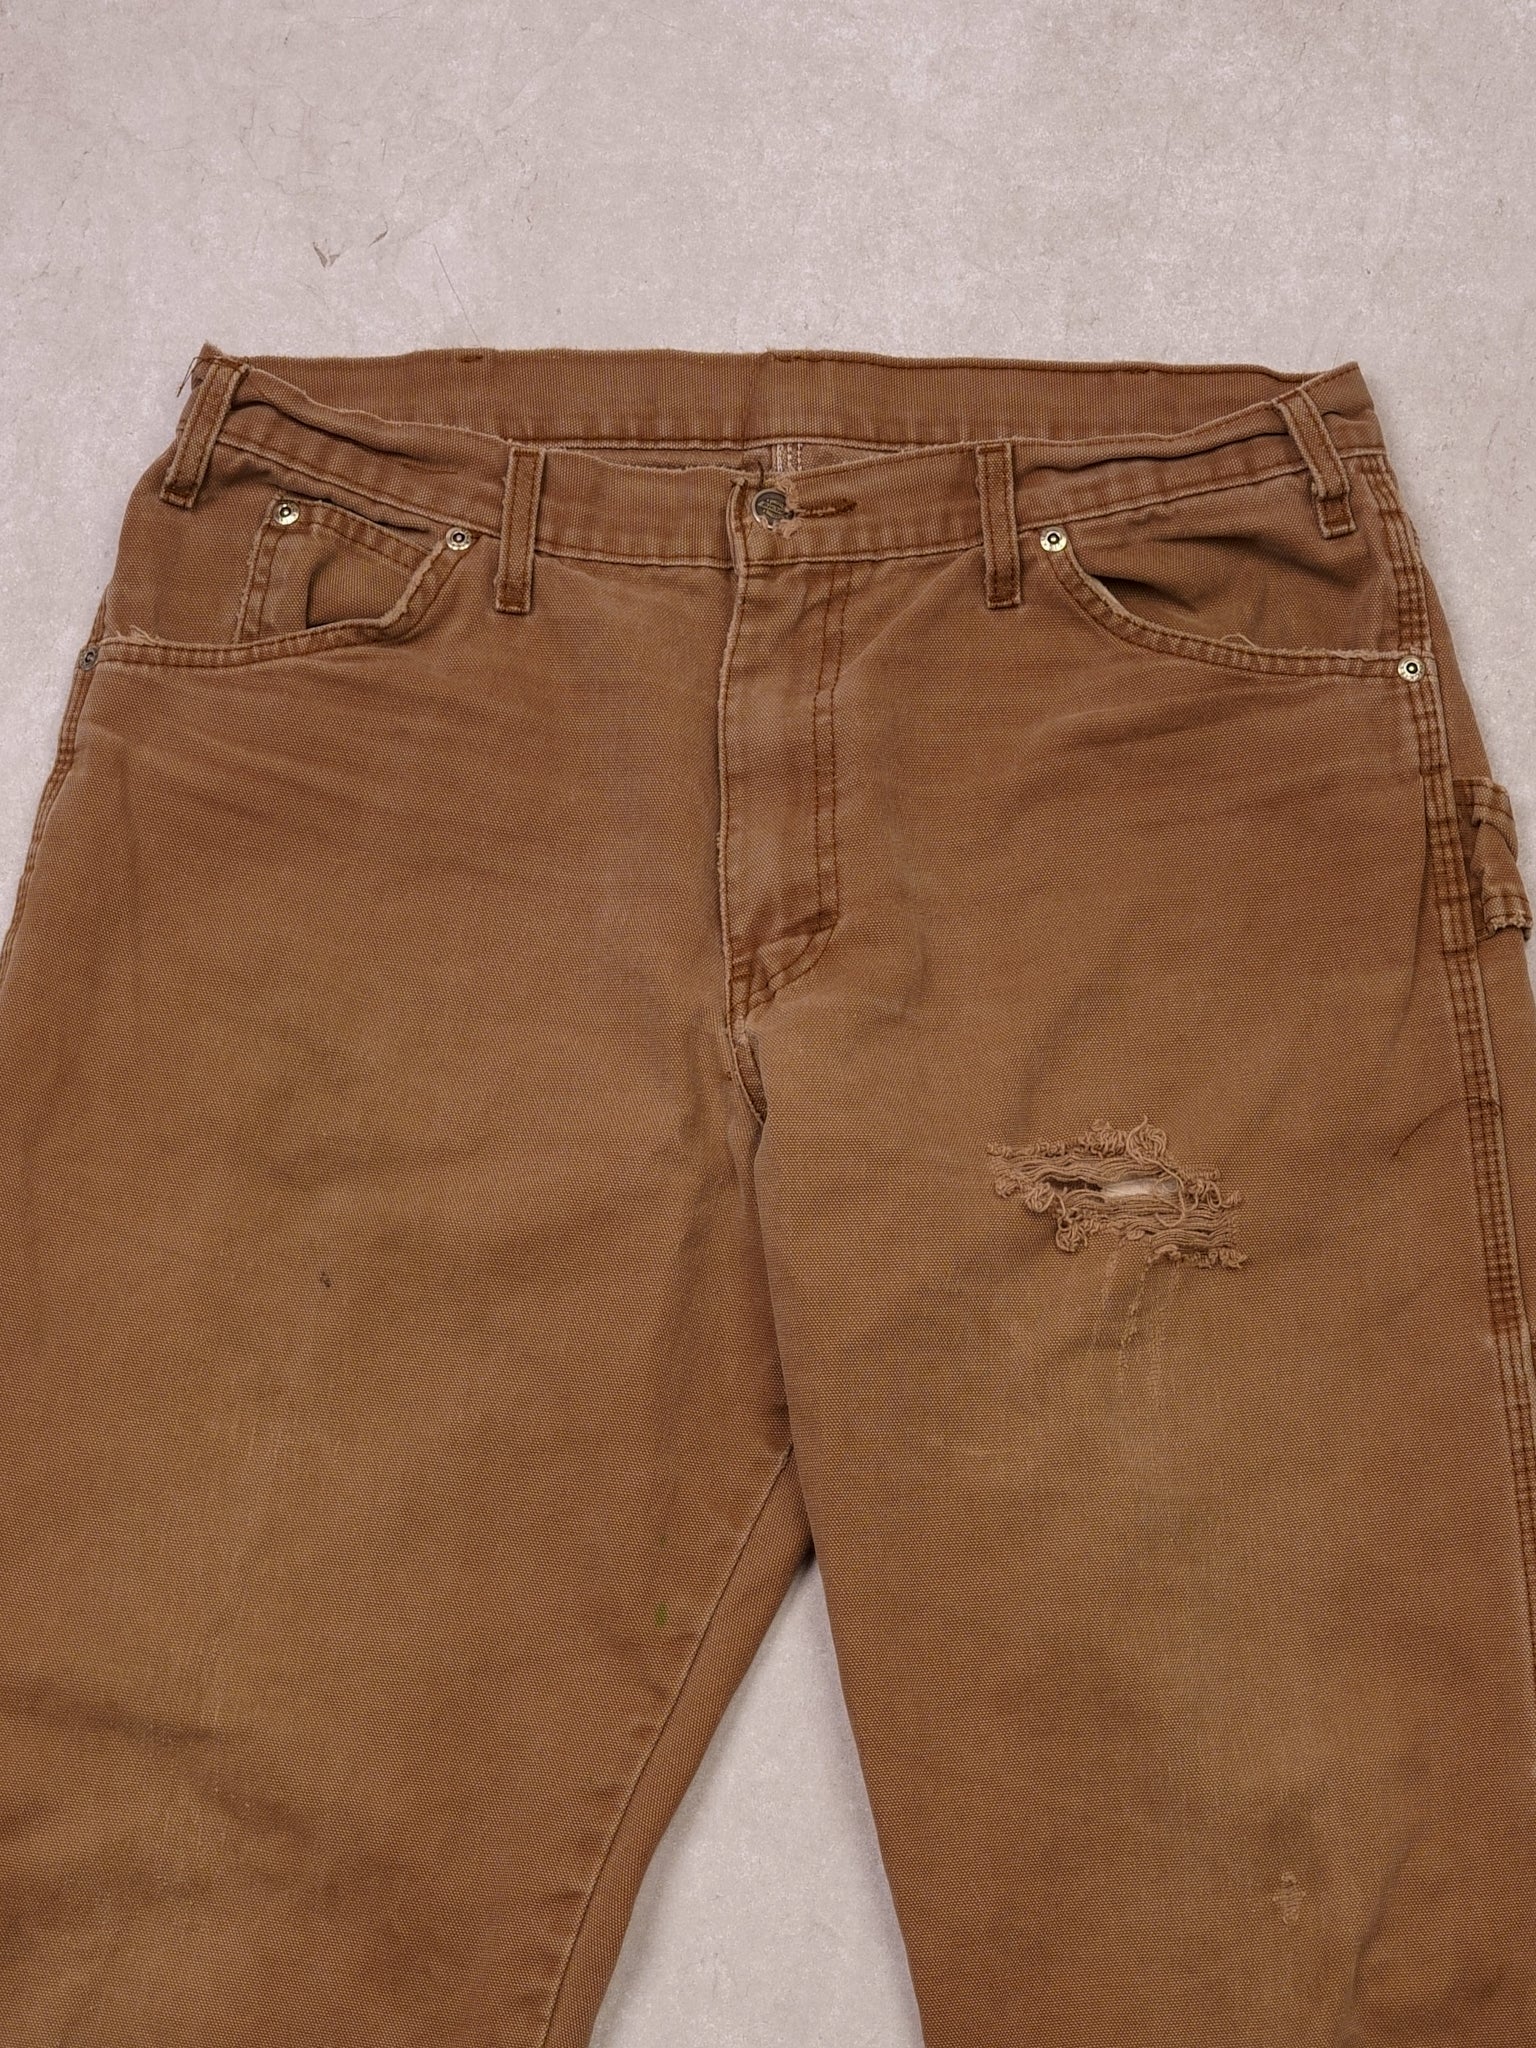 Vintage Brown Dickies Distressed Carpenter Pants (32x33)